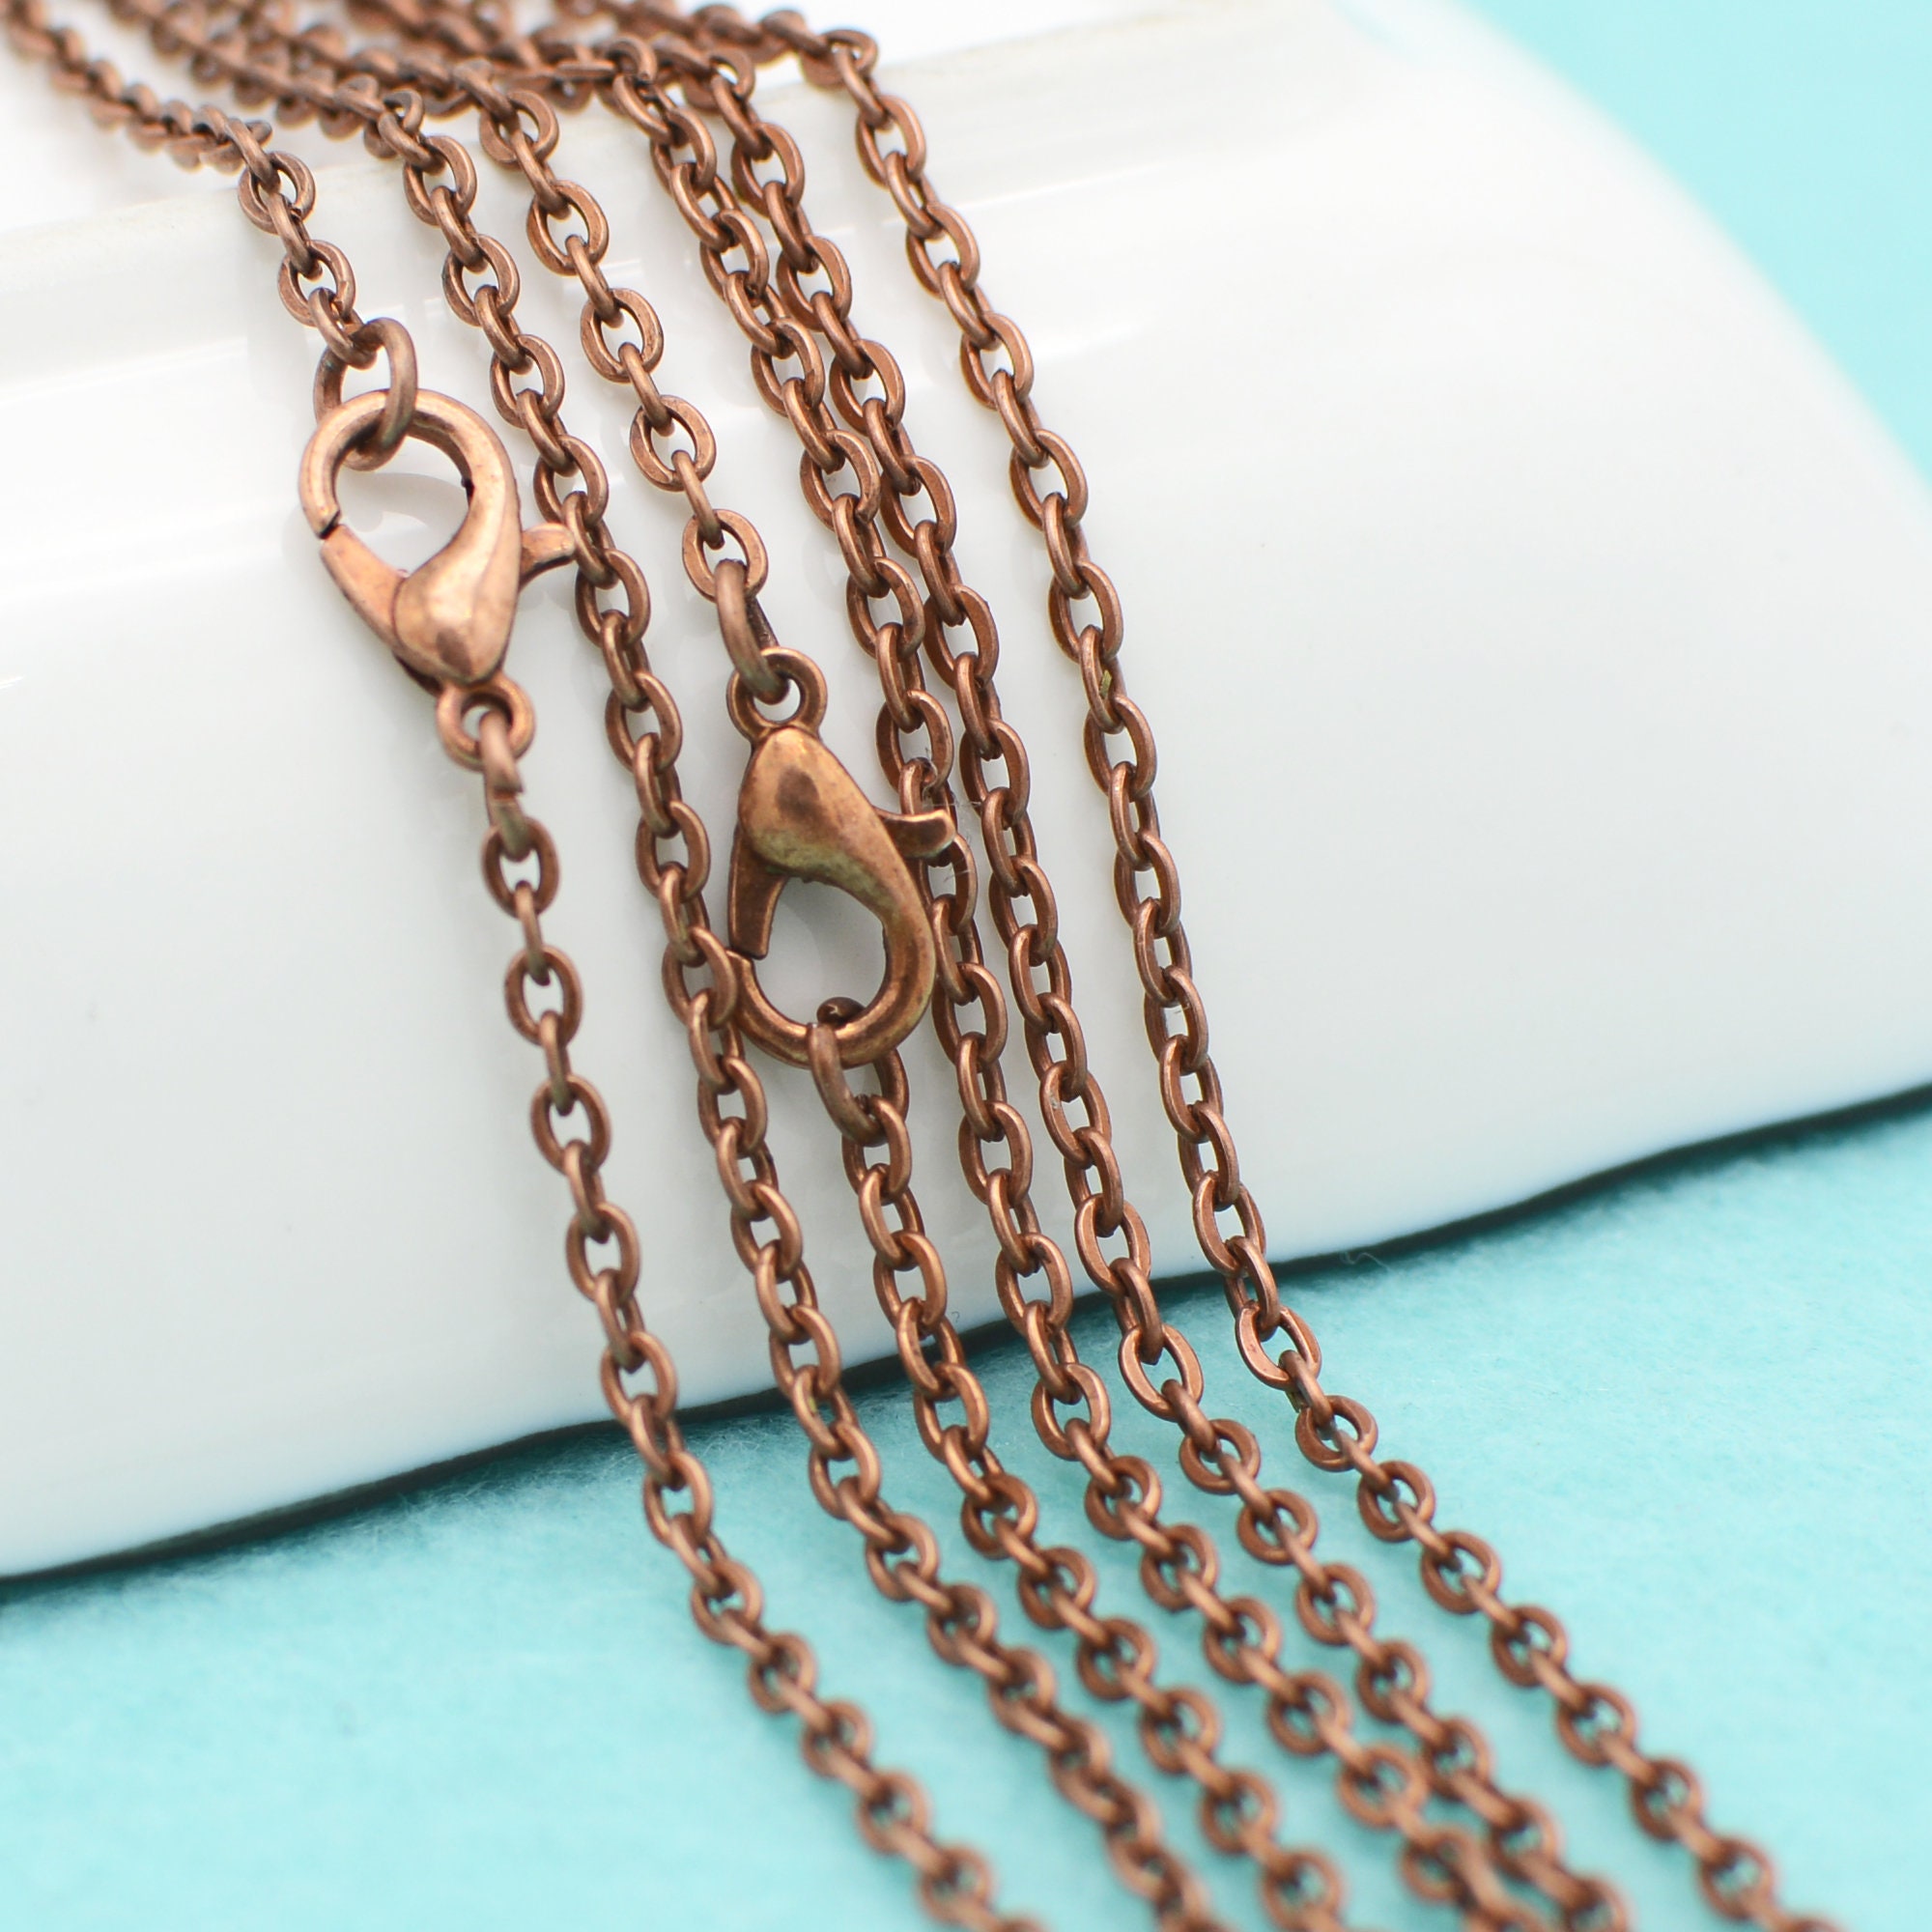 Chain - Antique Copper Finish - 1/8 Thick